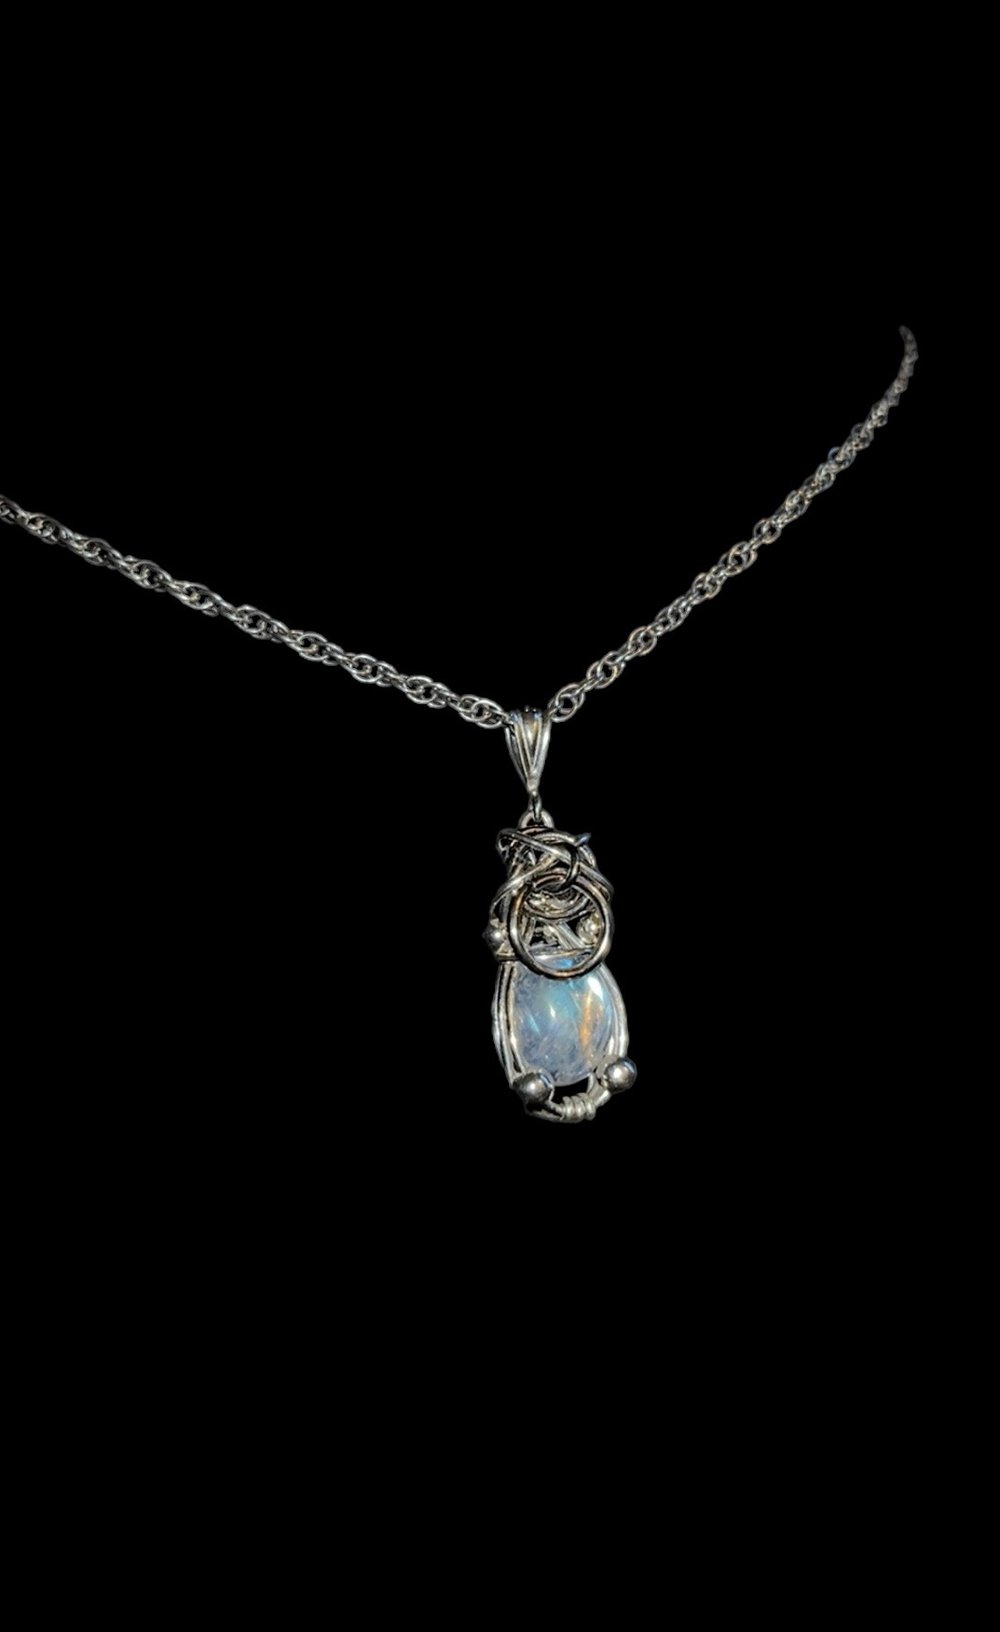 ⟢ Iris necklace ⟣